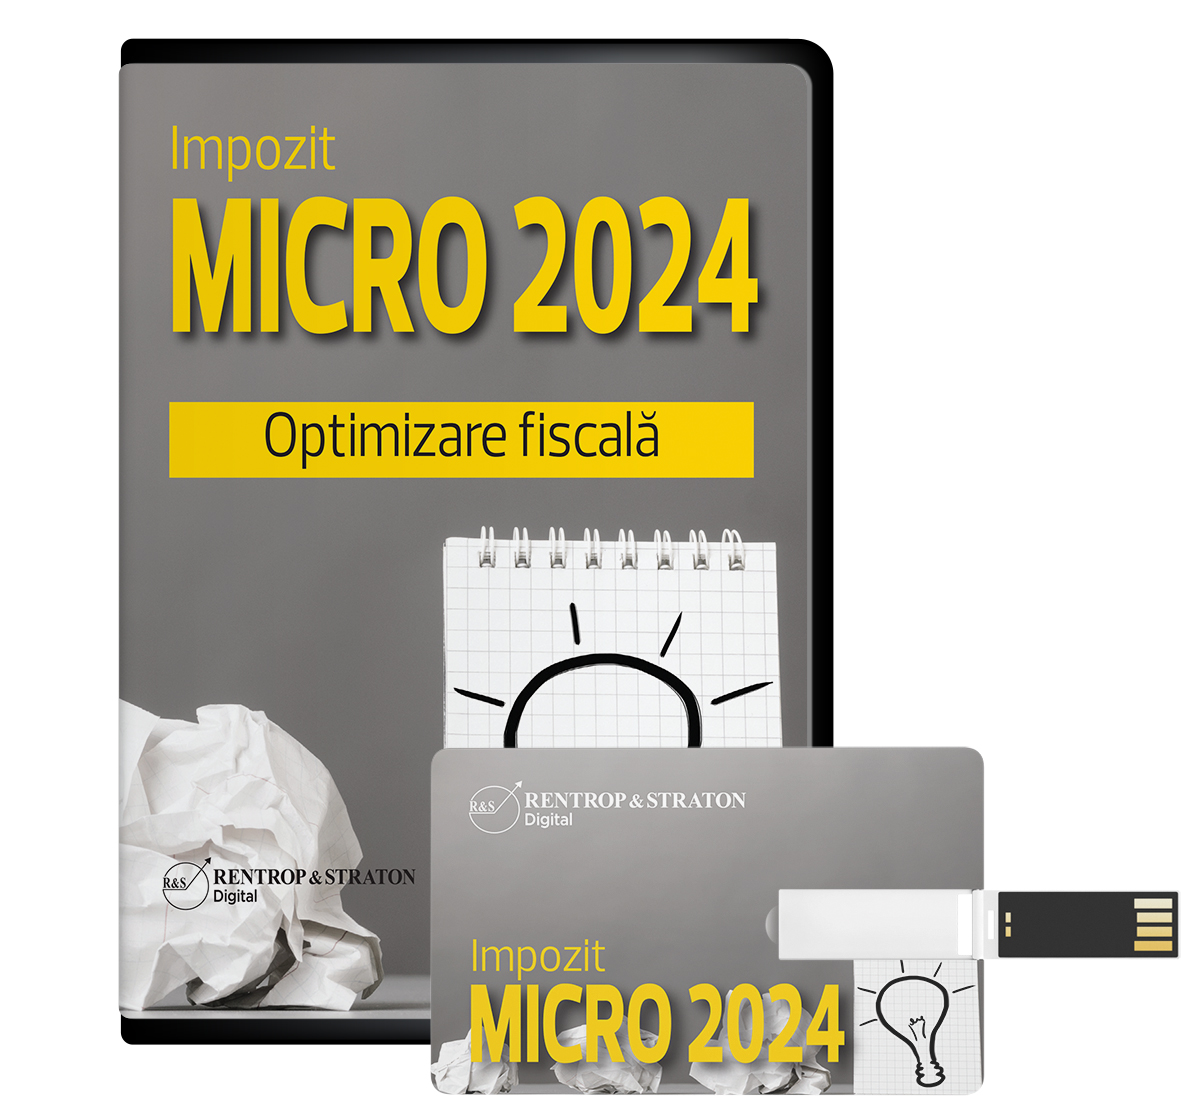 Impozit MICRO 2024. Optimizare fiscala